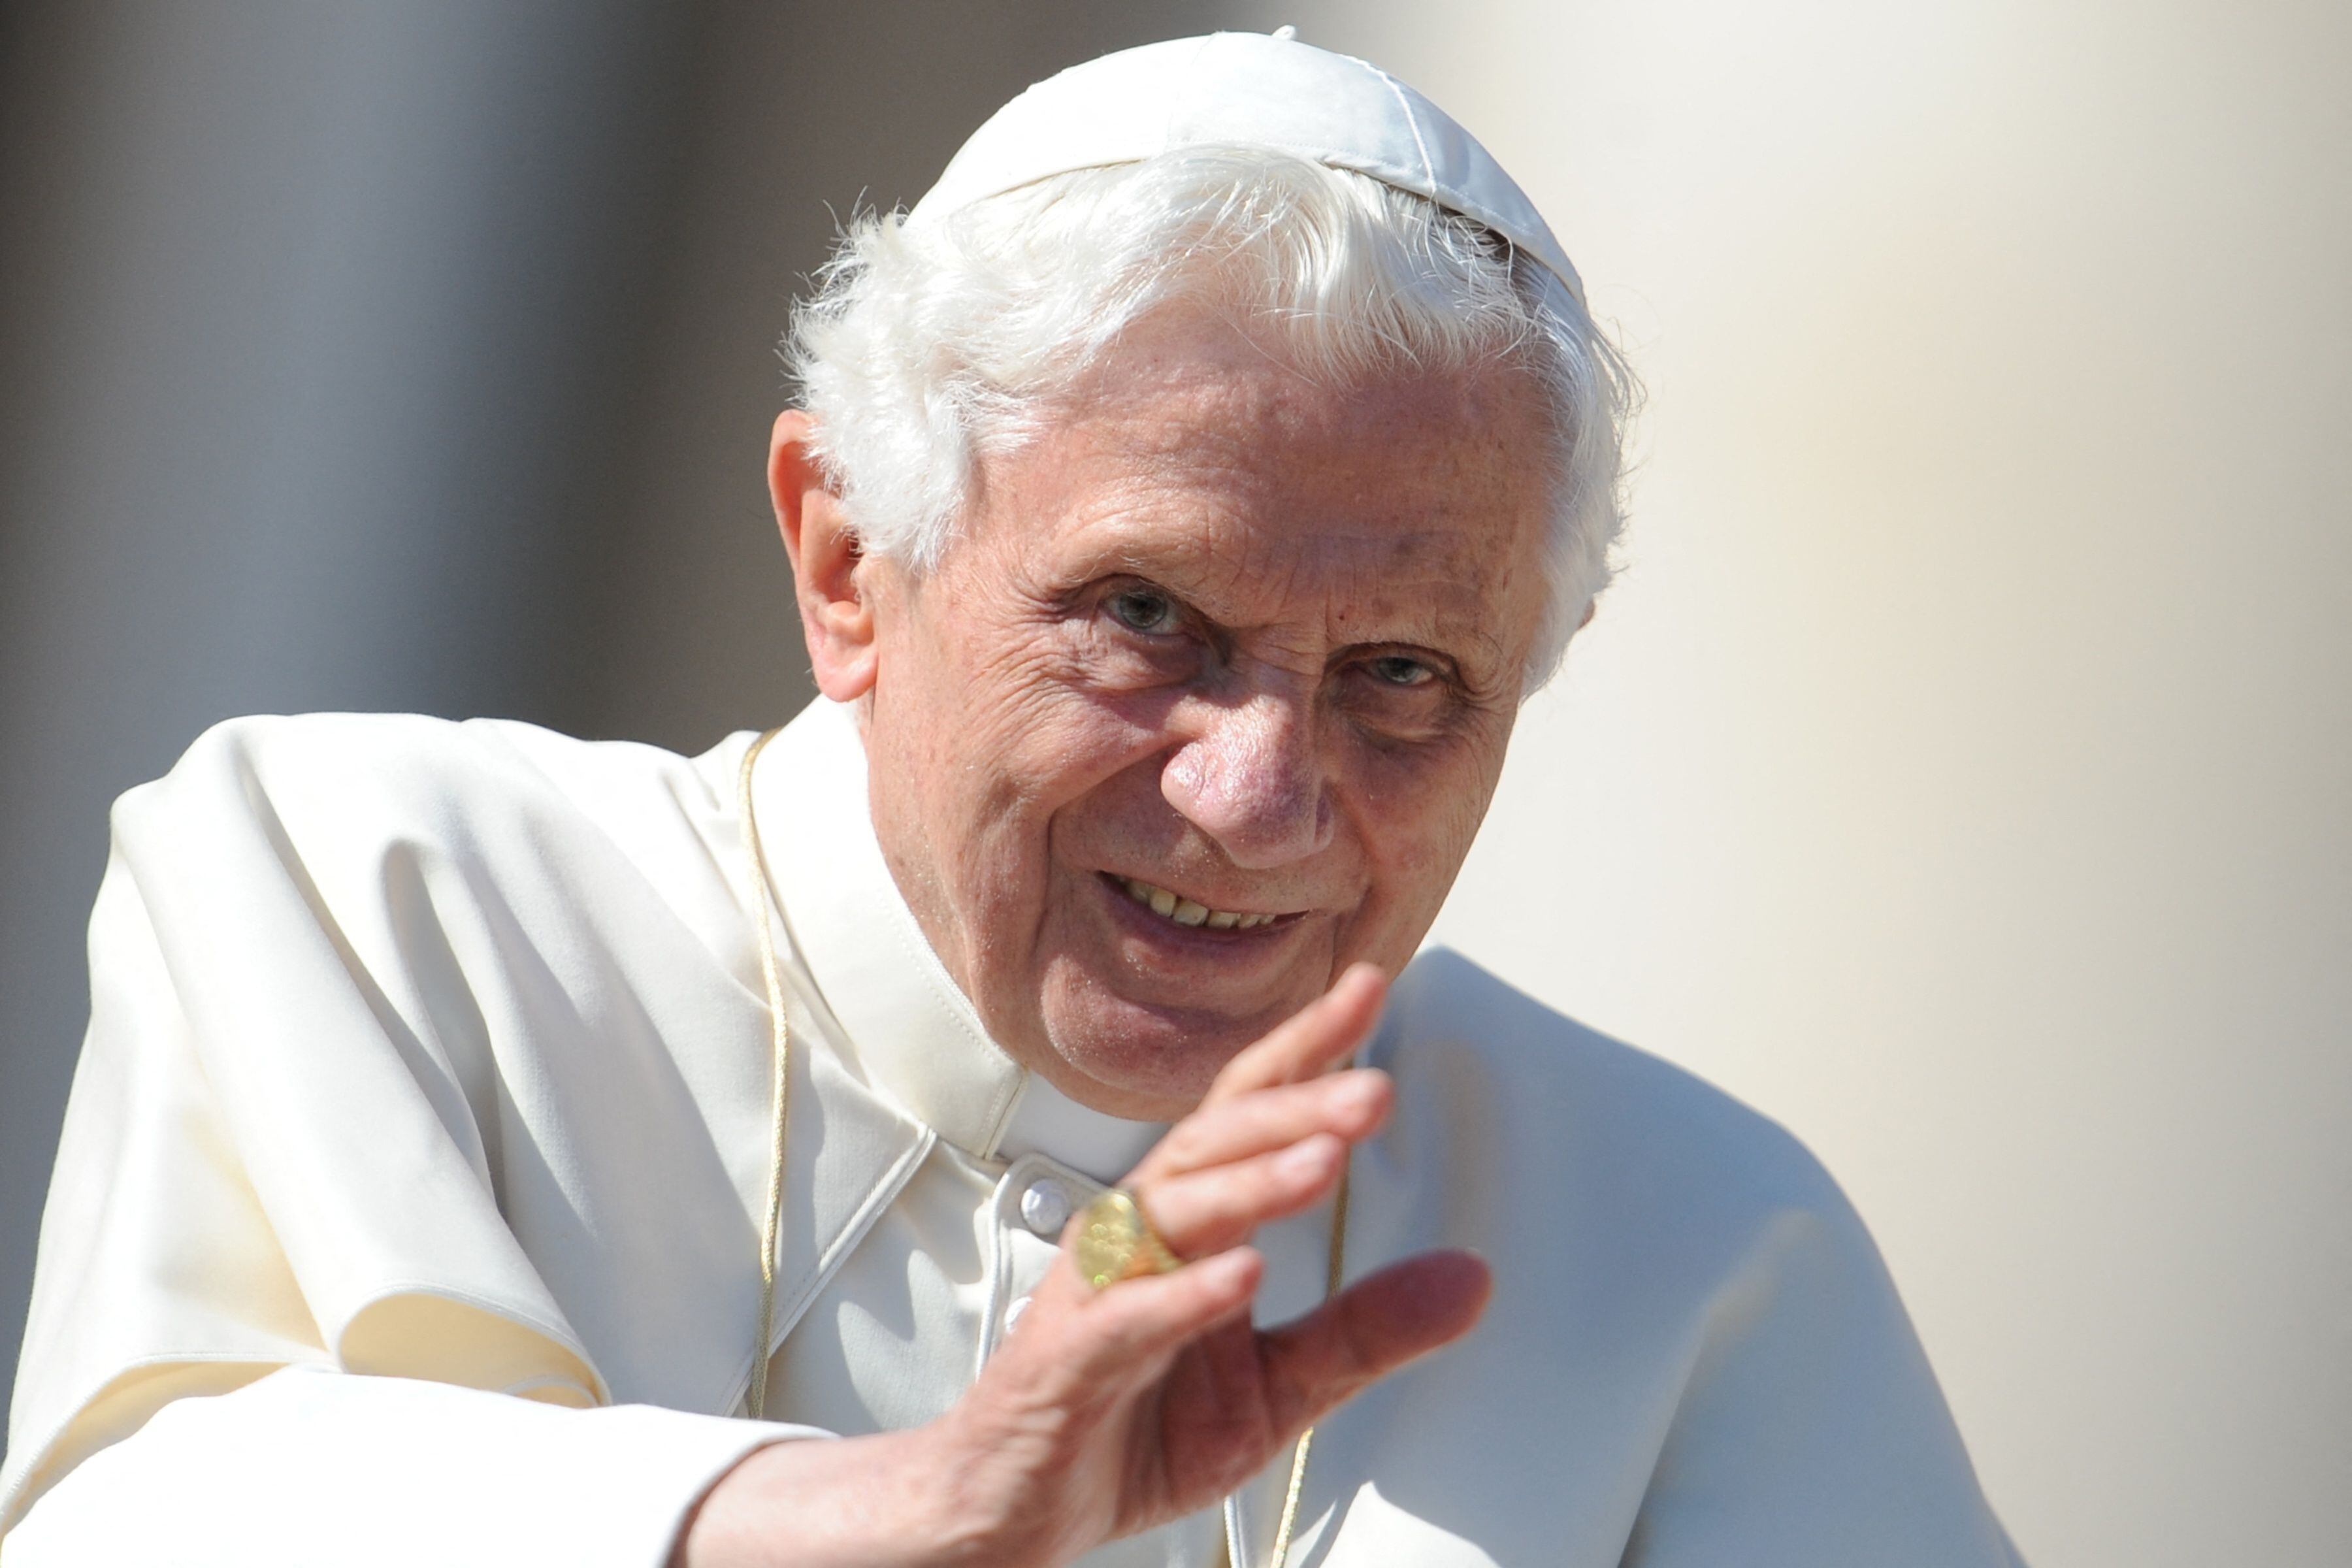 2013년 교황직을 자진 사임한 베네딕토 16세는 31일 (현지시간) 95세를 일기로 선종했다. 사진은 베네딕토 16세 전 교황이 지난 2011년 10월 19일 바티칸 성 베드로 광장에서 열린 일일 알현에서 신자들과 인사하는 모습. /AFP=뉴스1